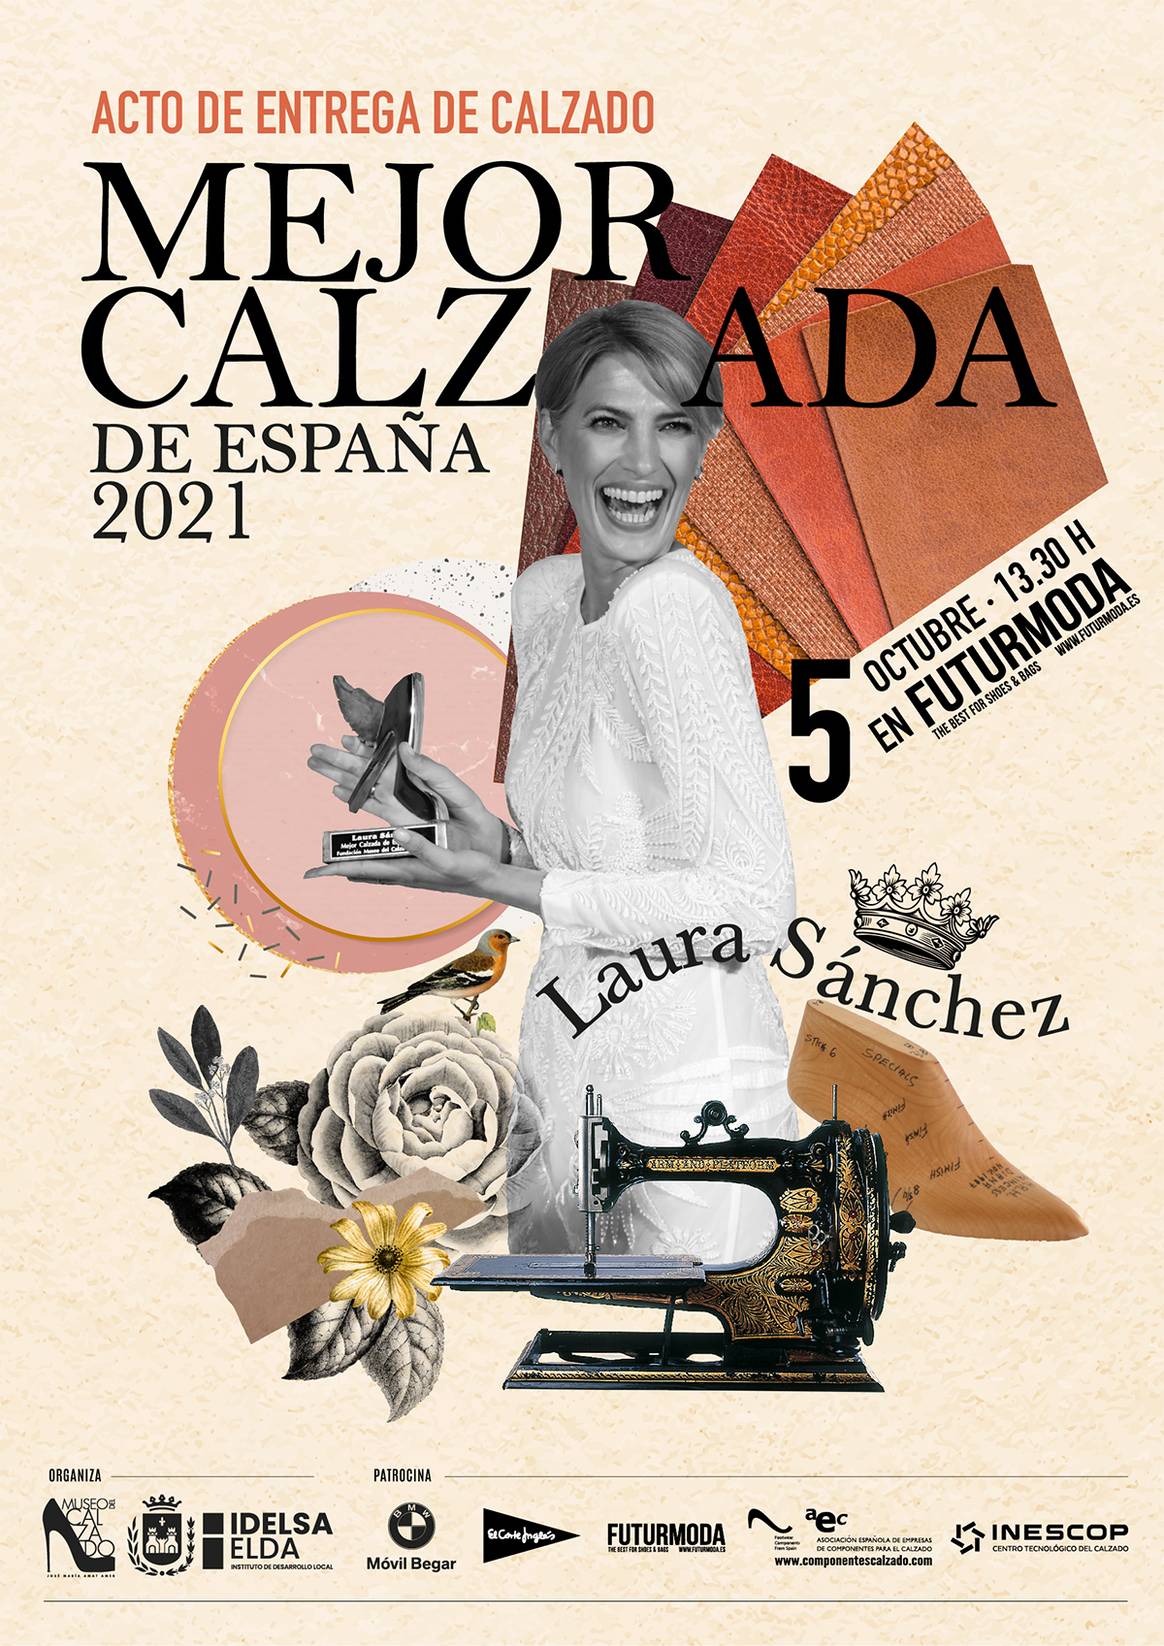 Photo Credits: Cartel oficial de la ceremonia de entrega de calzado a Laura Sánchez como “Mujer mejor calzada de España” de 2021.